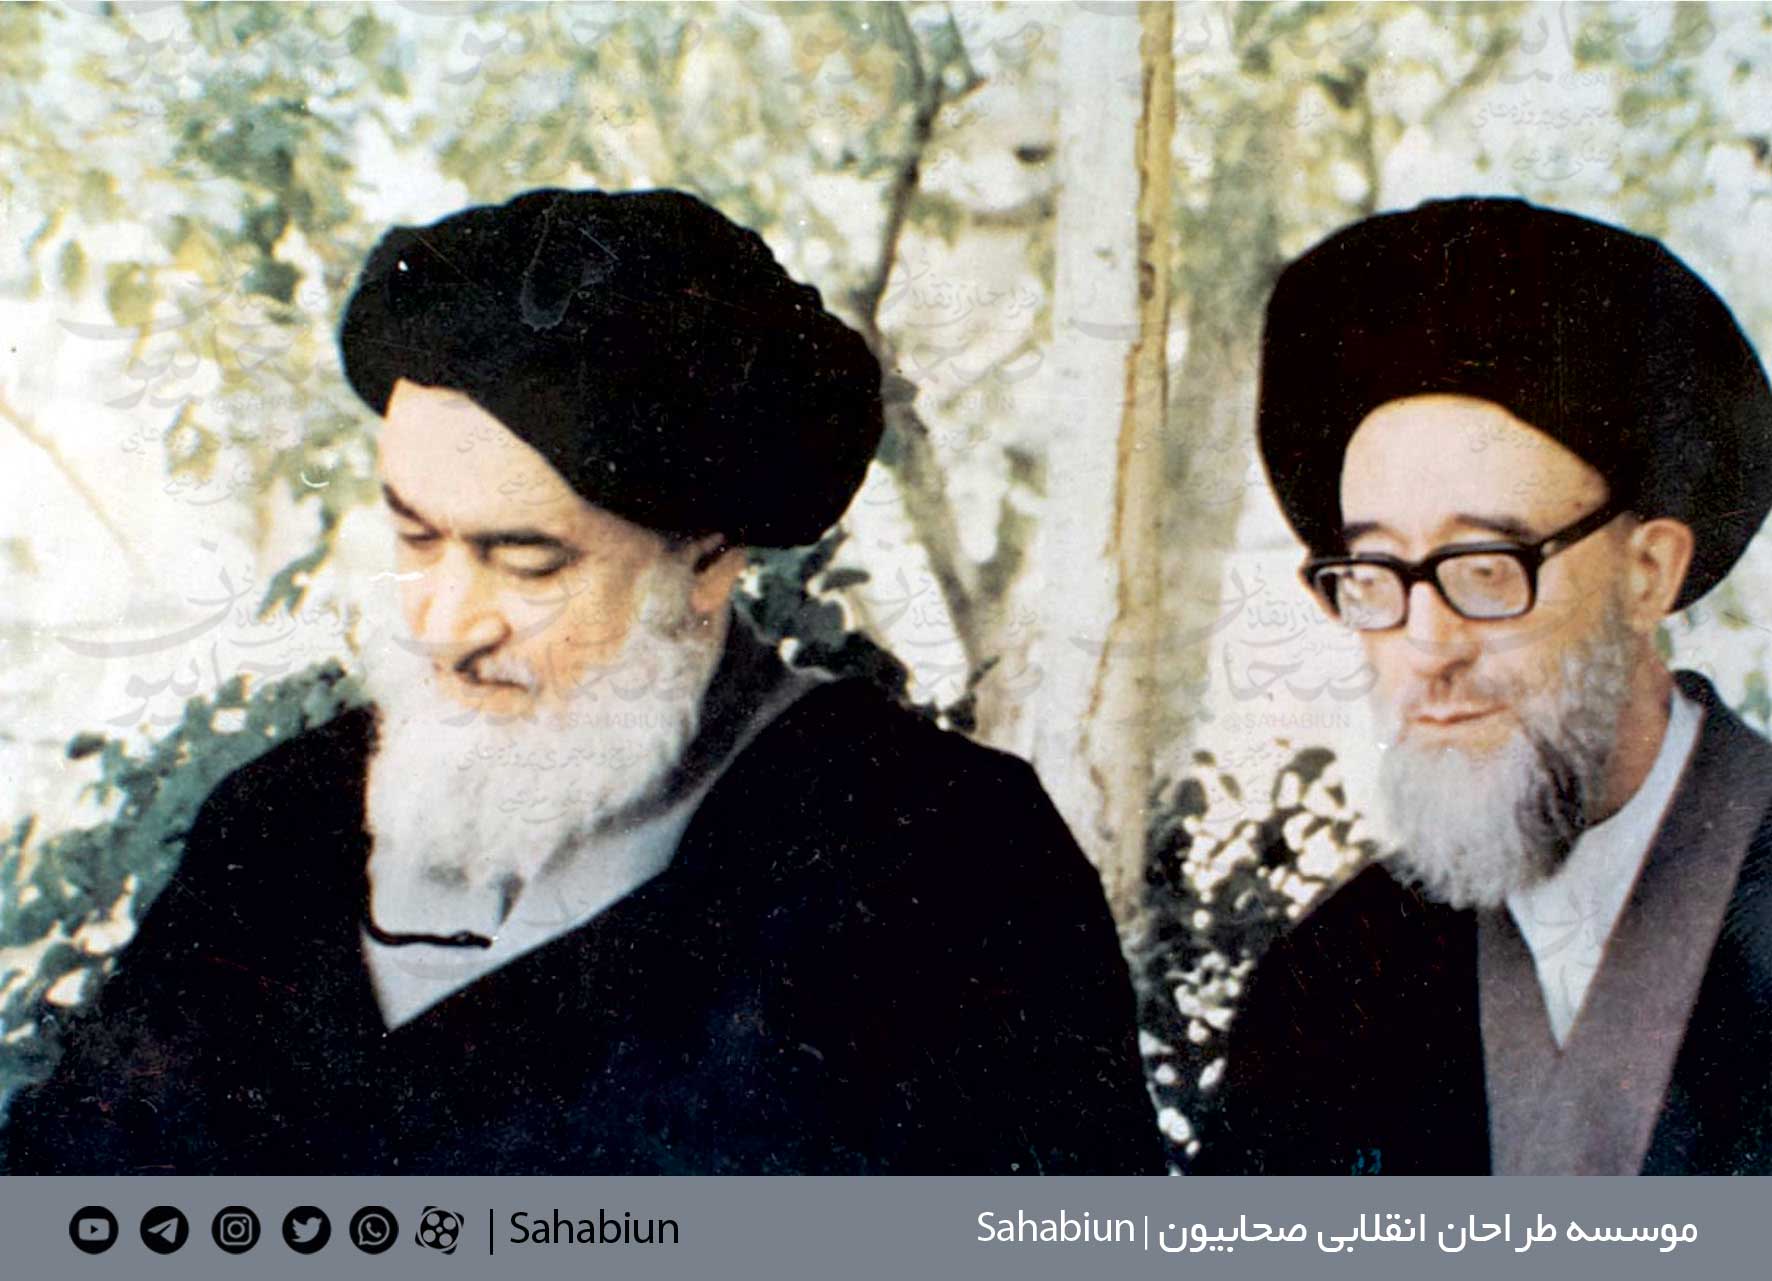 قاب عکس با کیفیت تصویر شهید آیت الله مدنی و قاضی طباطبایی در نقشه ایران